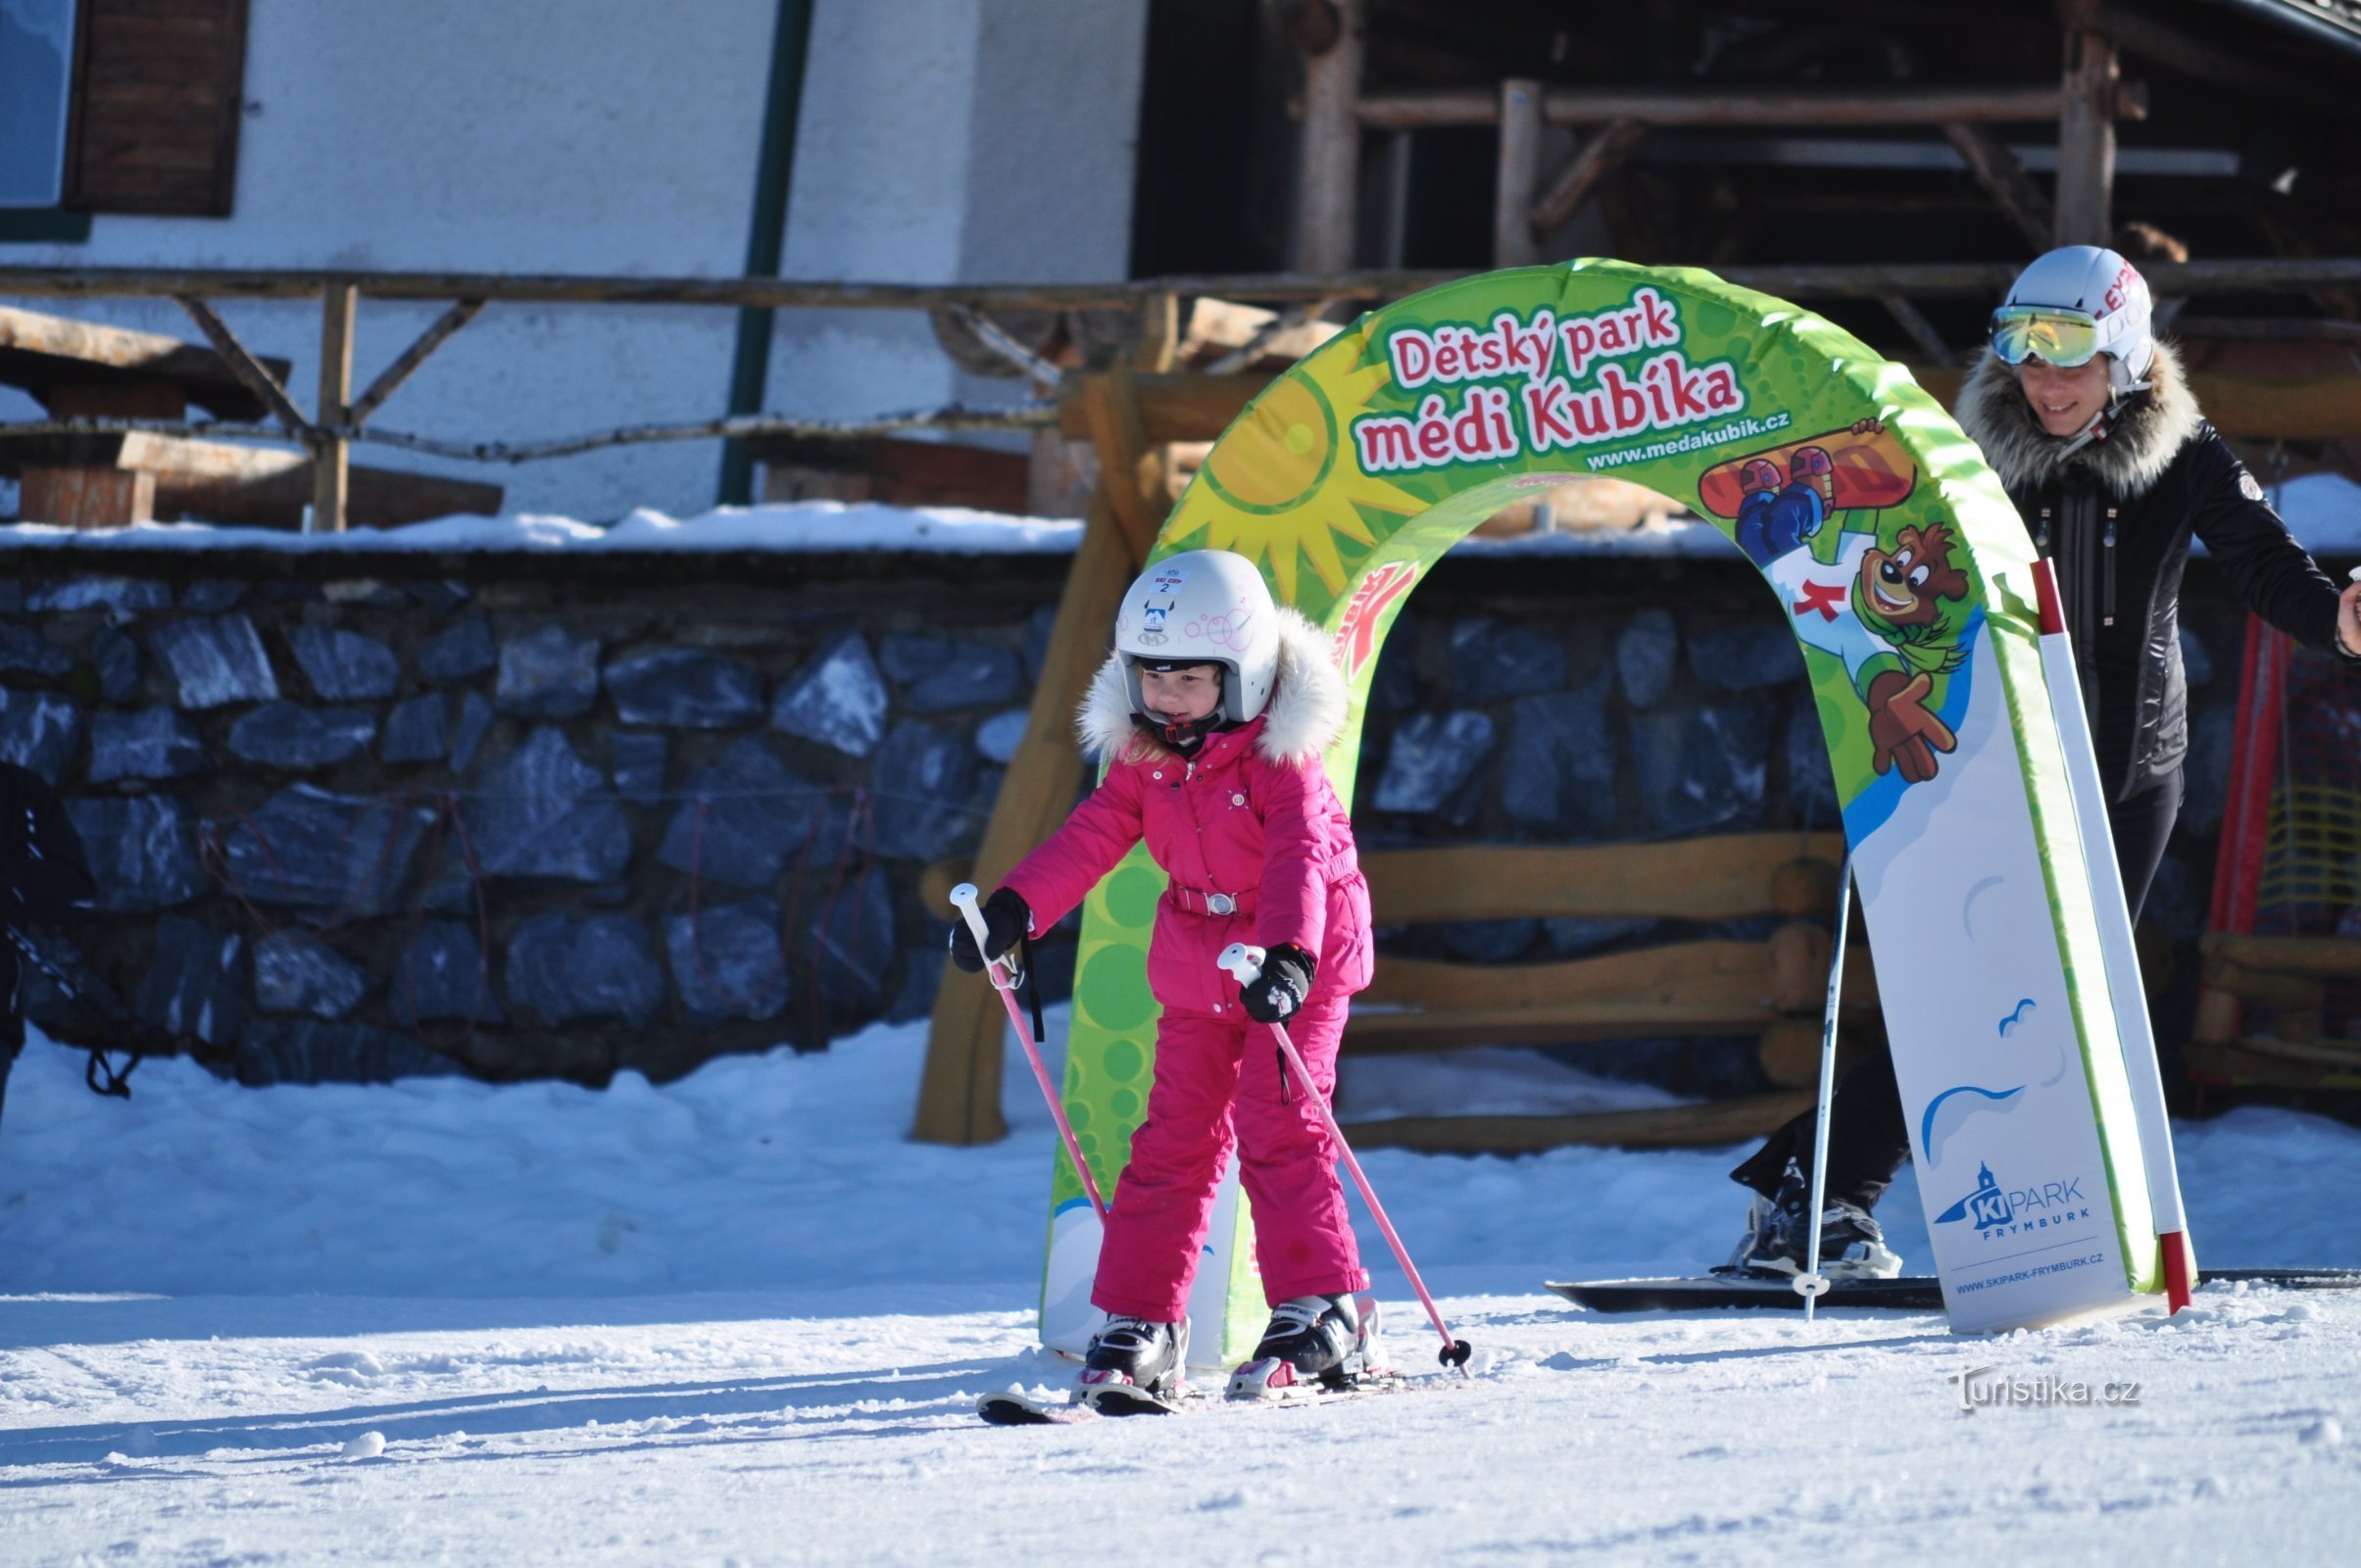 Os elementos para esquiar são o orgulho do nosso parque infantil